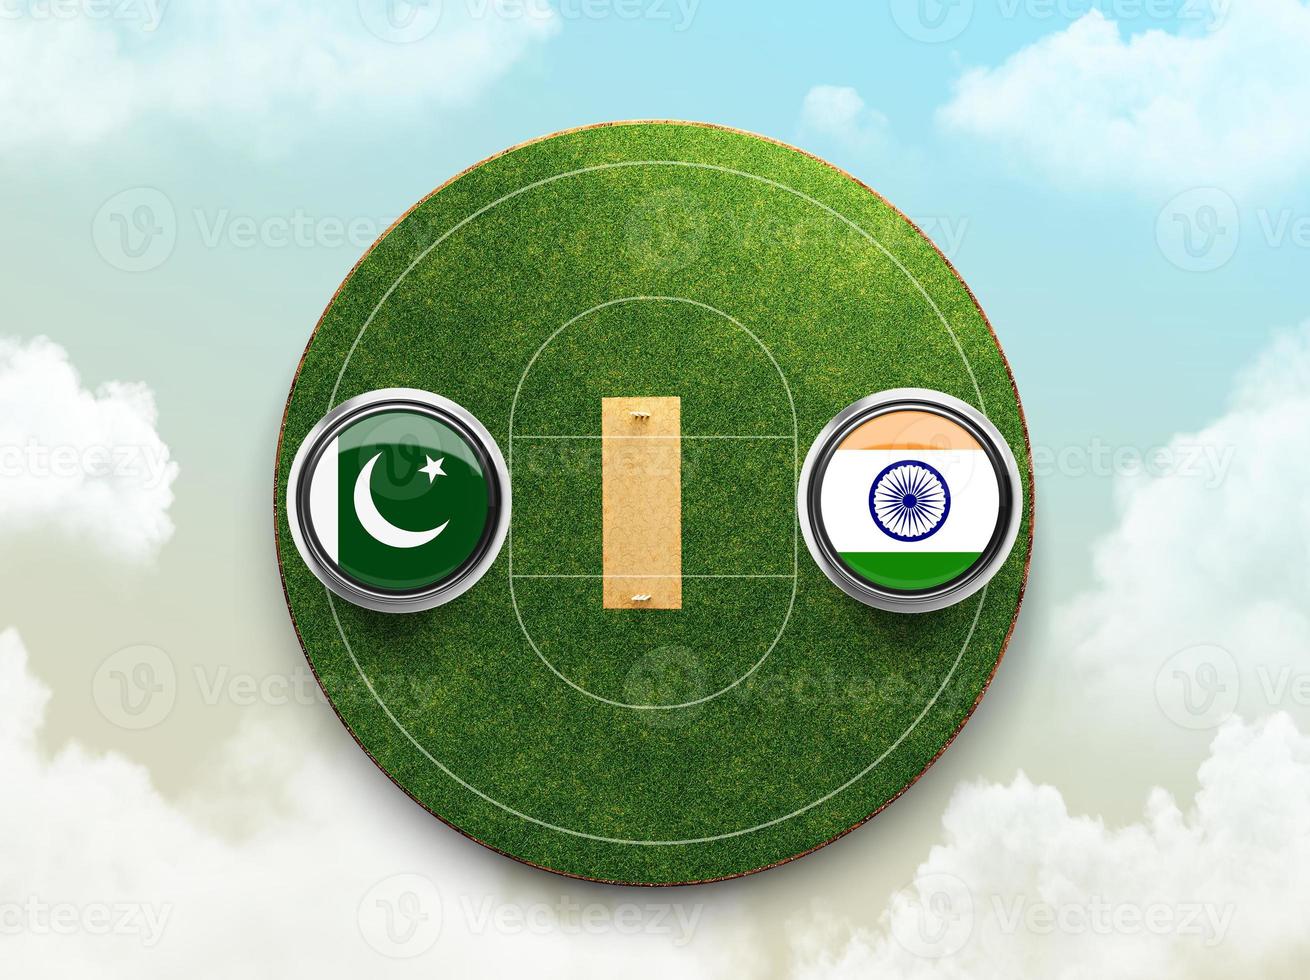 India vs Pakistan cricket flag with Button Badge on stadium 3d illustration photo